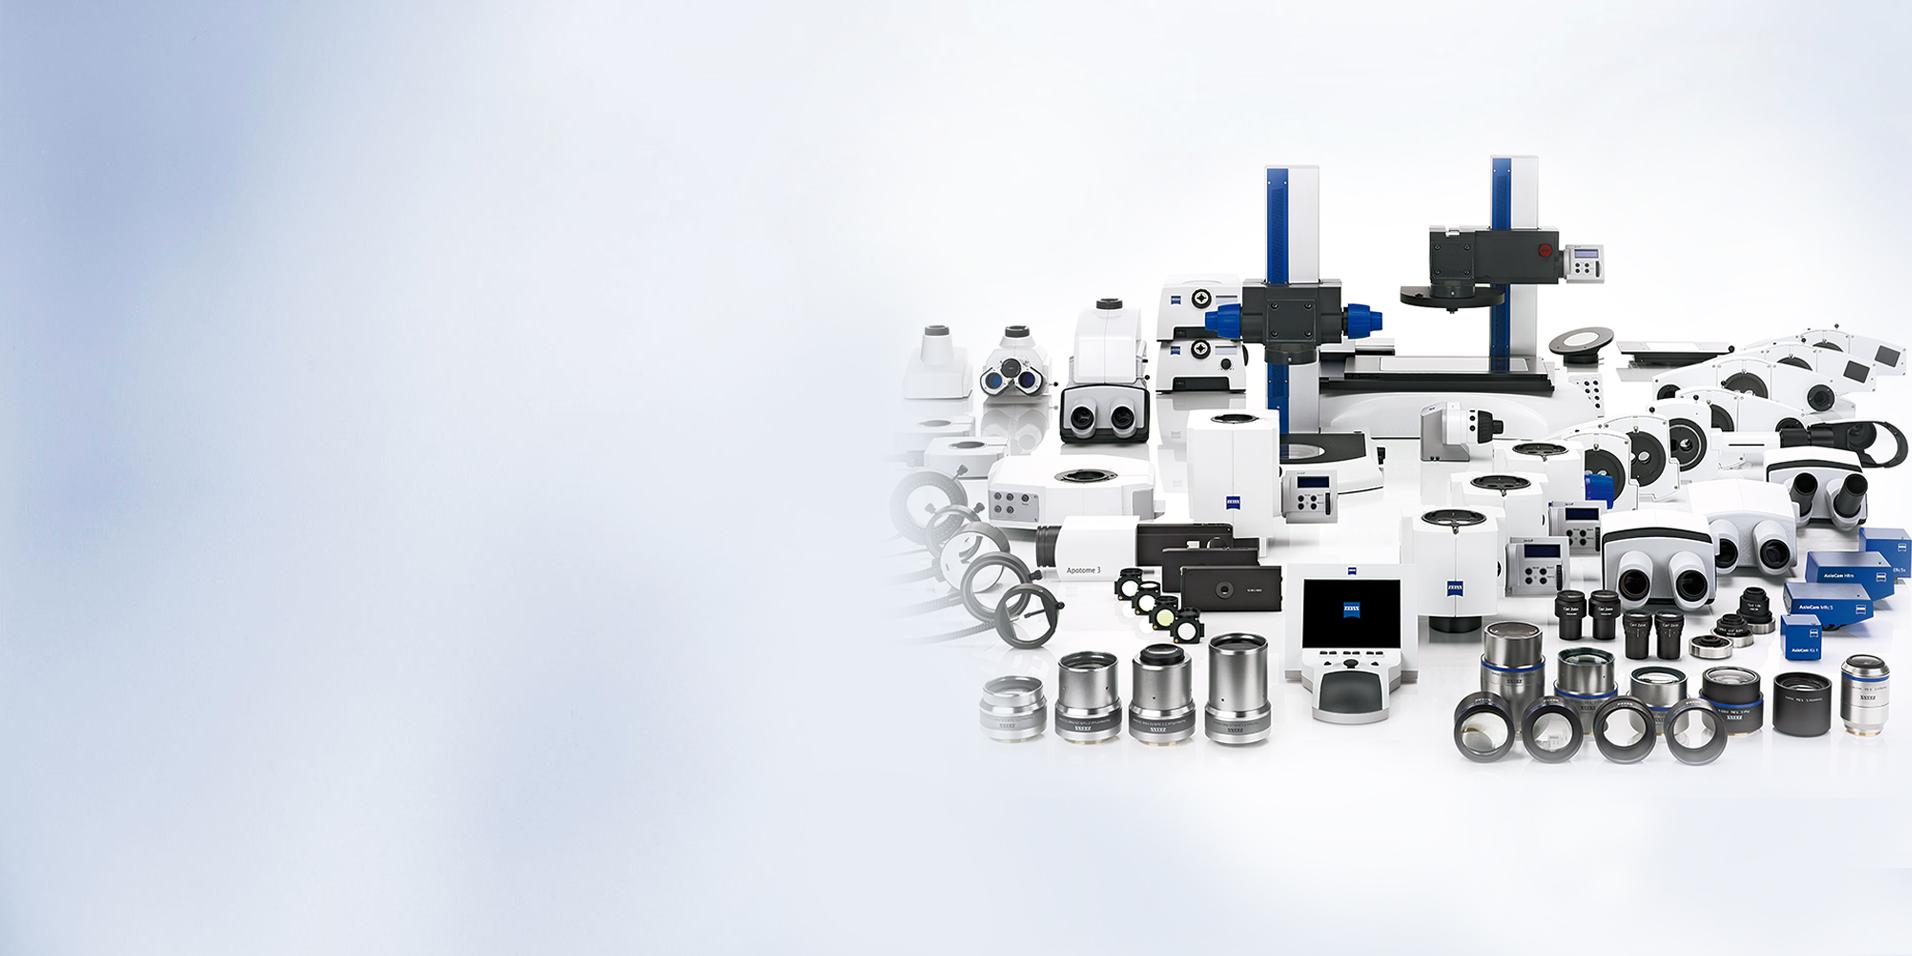 Diseño modular: adapte el microscopio a sus aplicaciones​